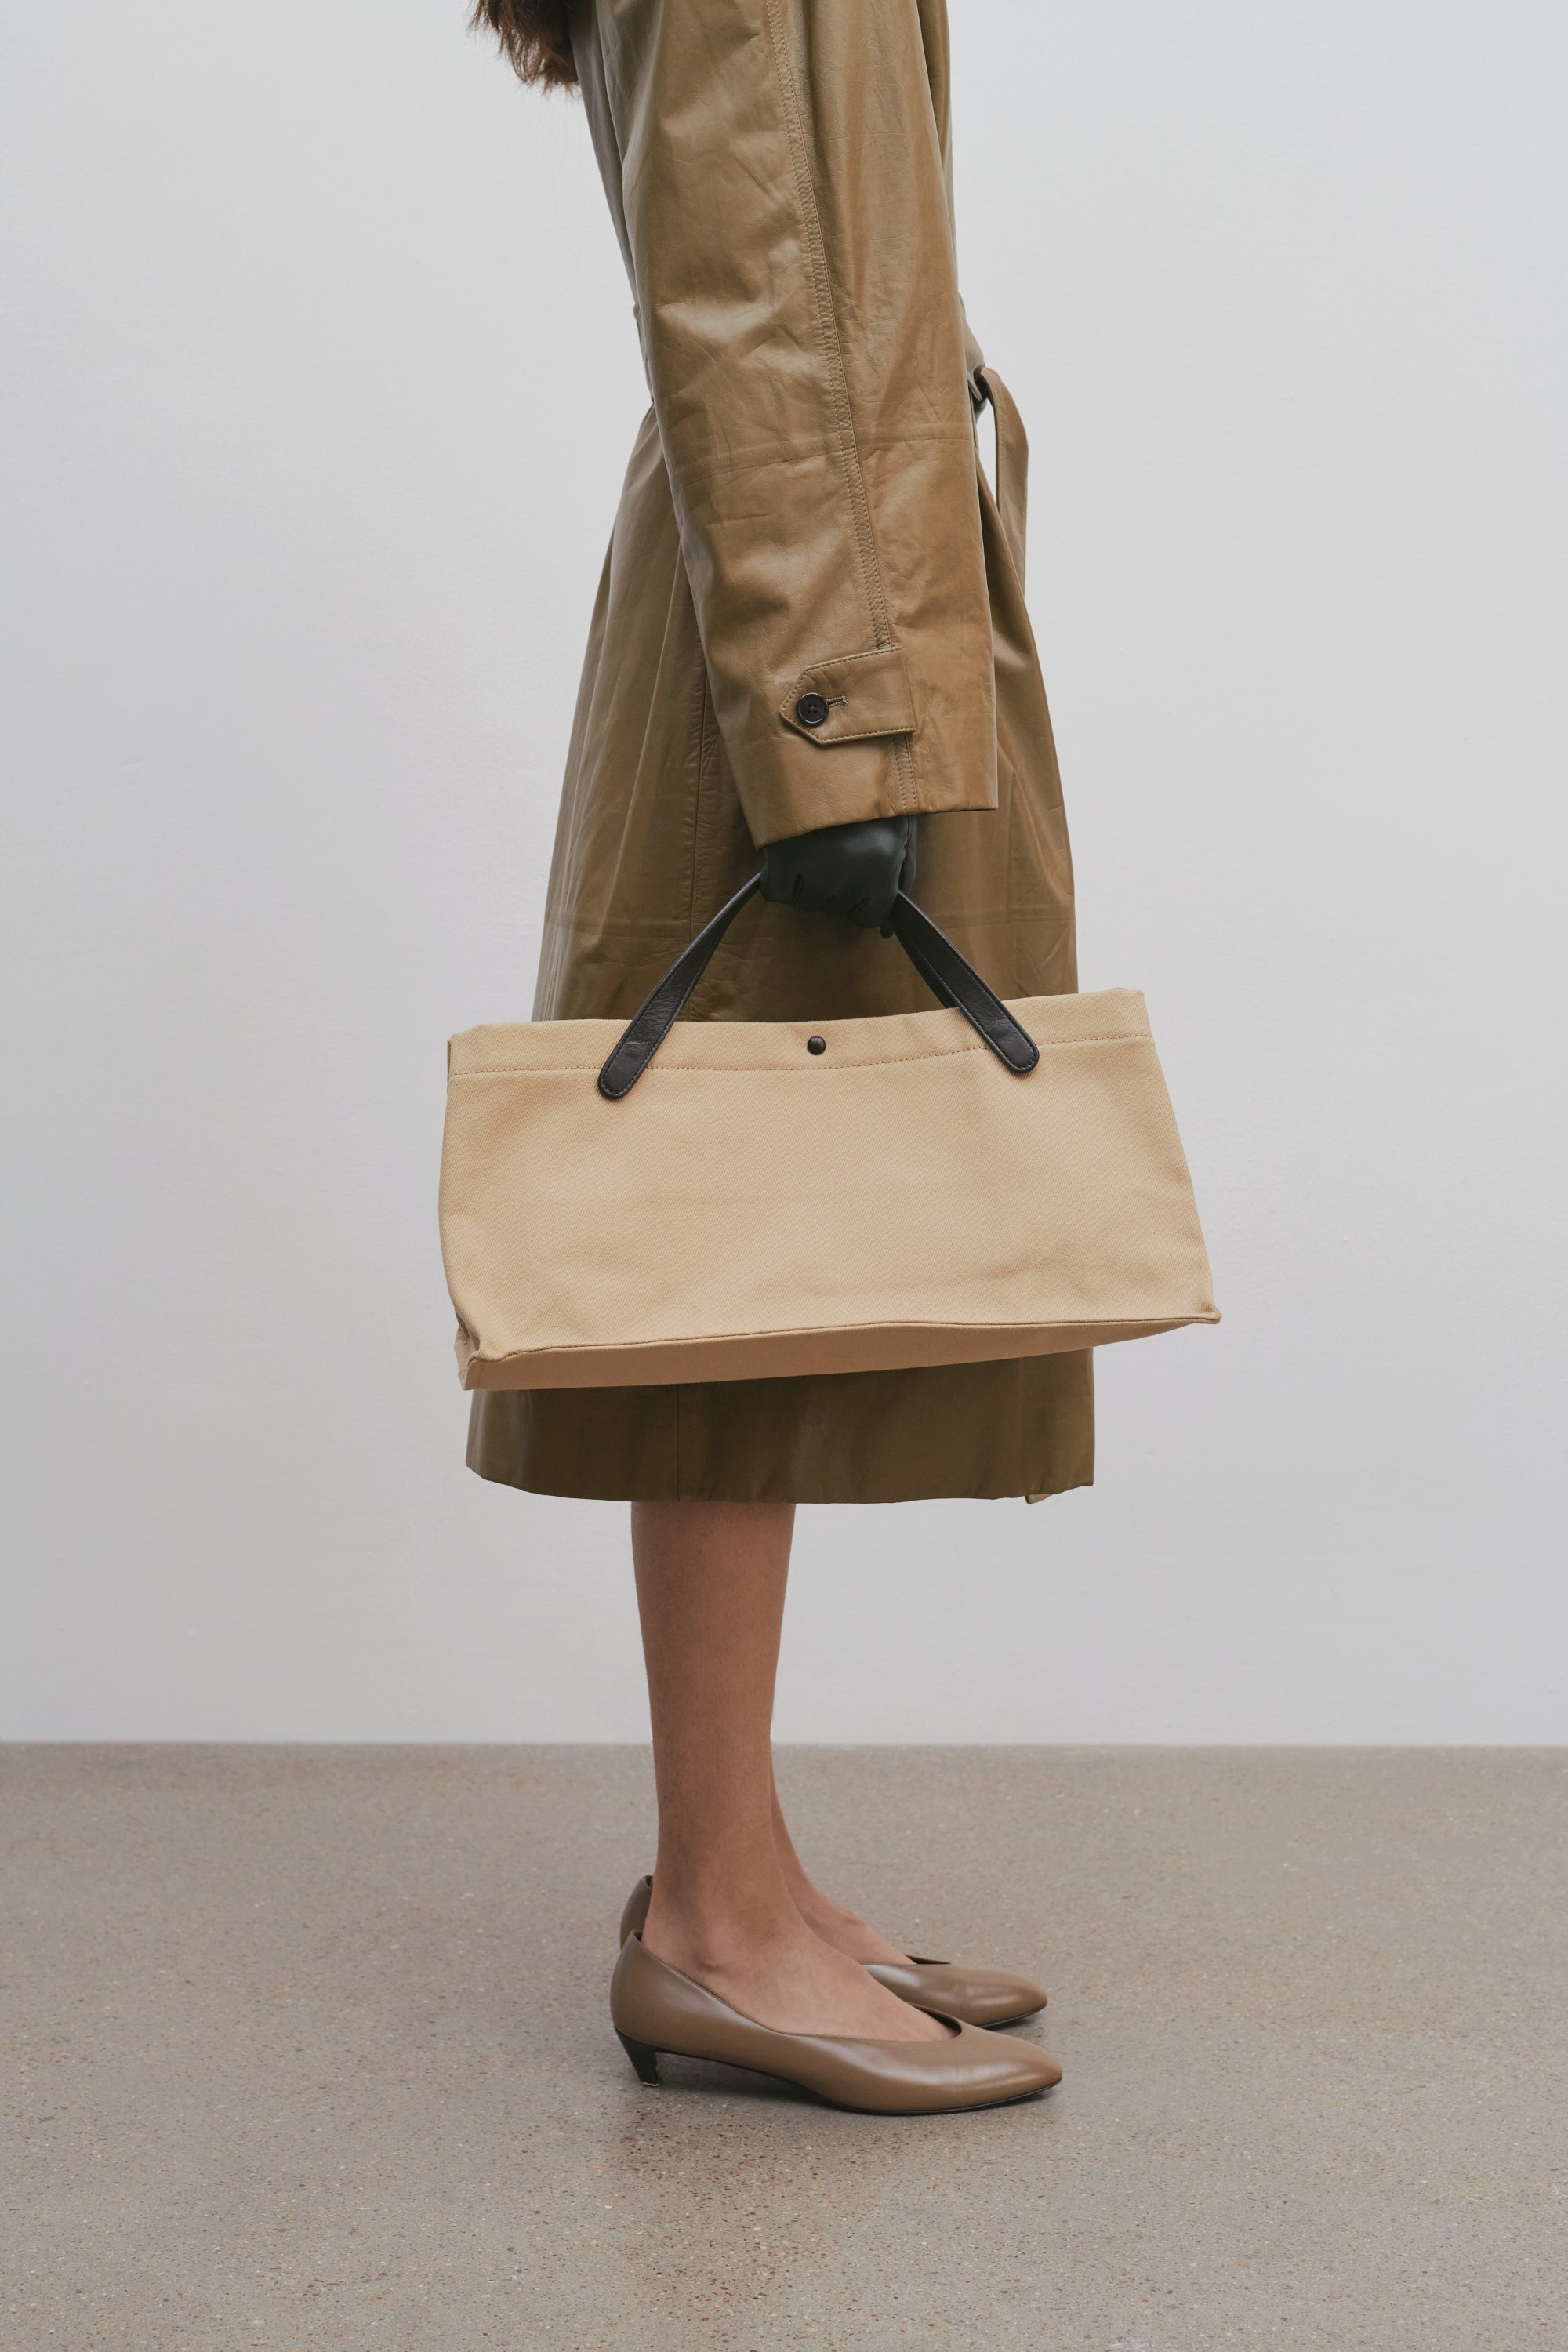 Medium Reversible Tote Bag in Beige - The Row